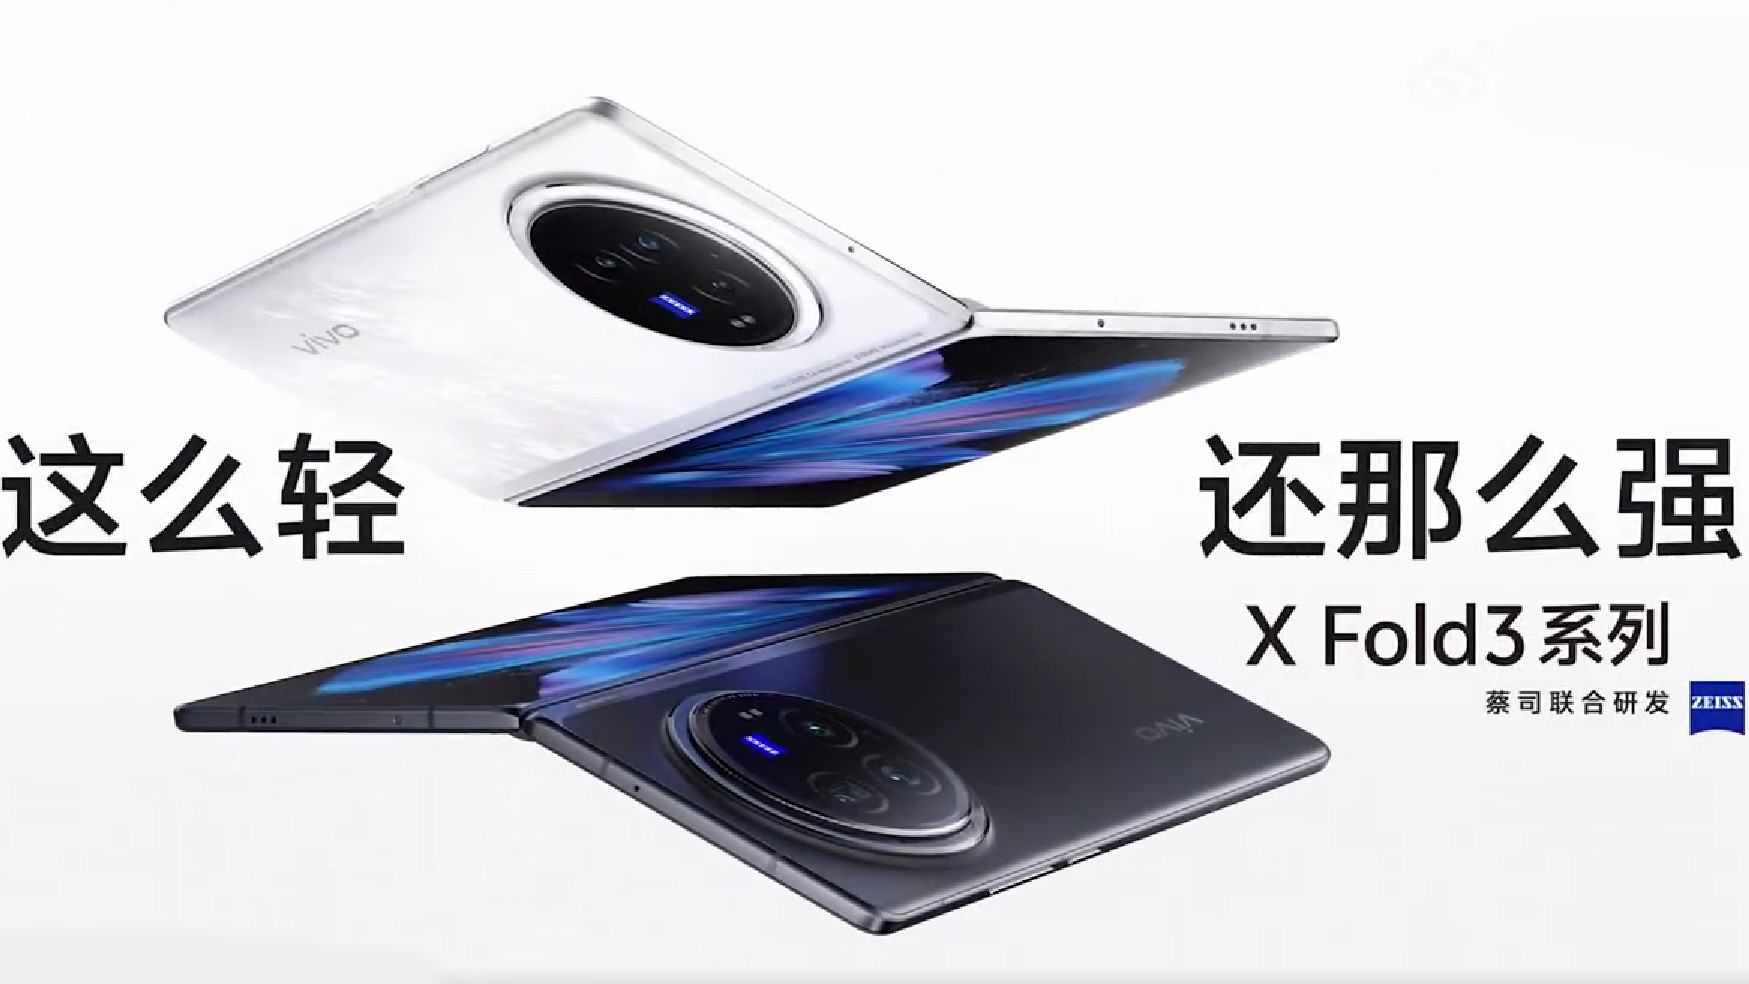 dispositivos vivo x fold 3 série weibo